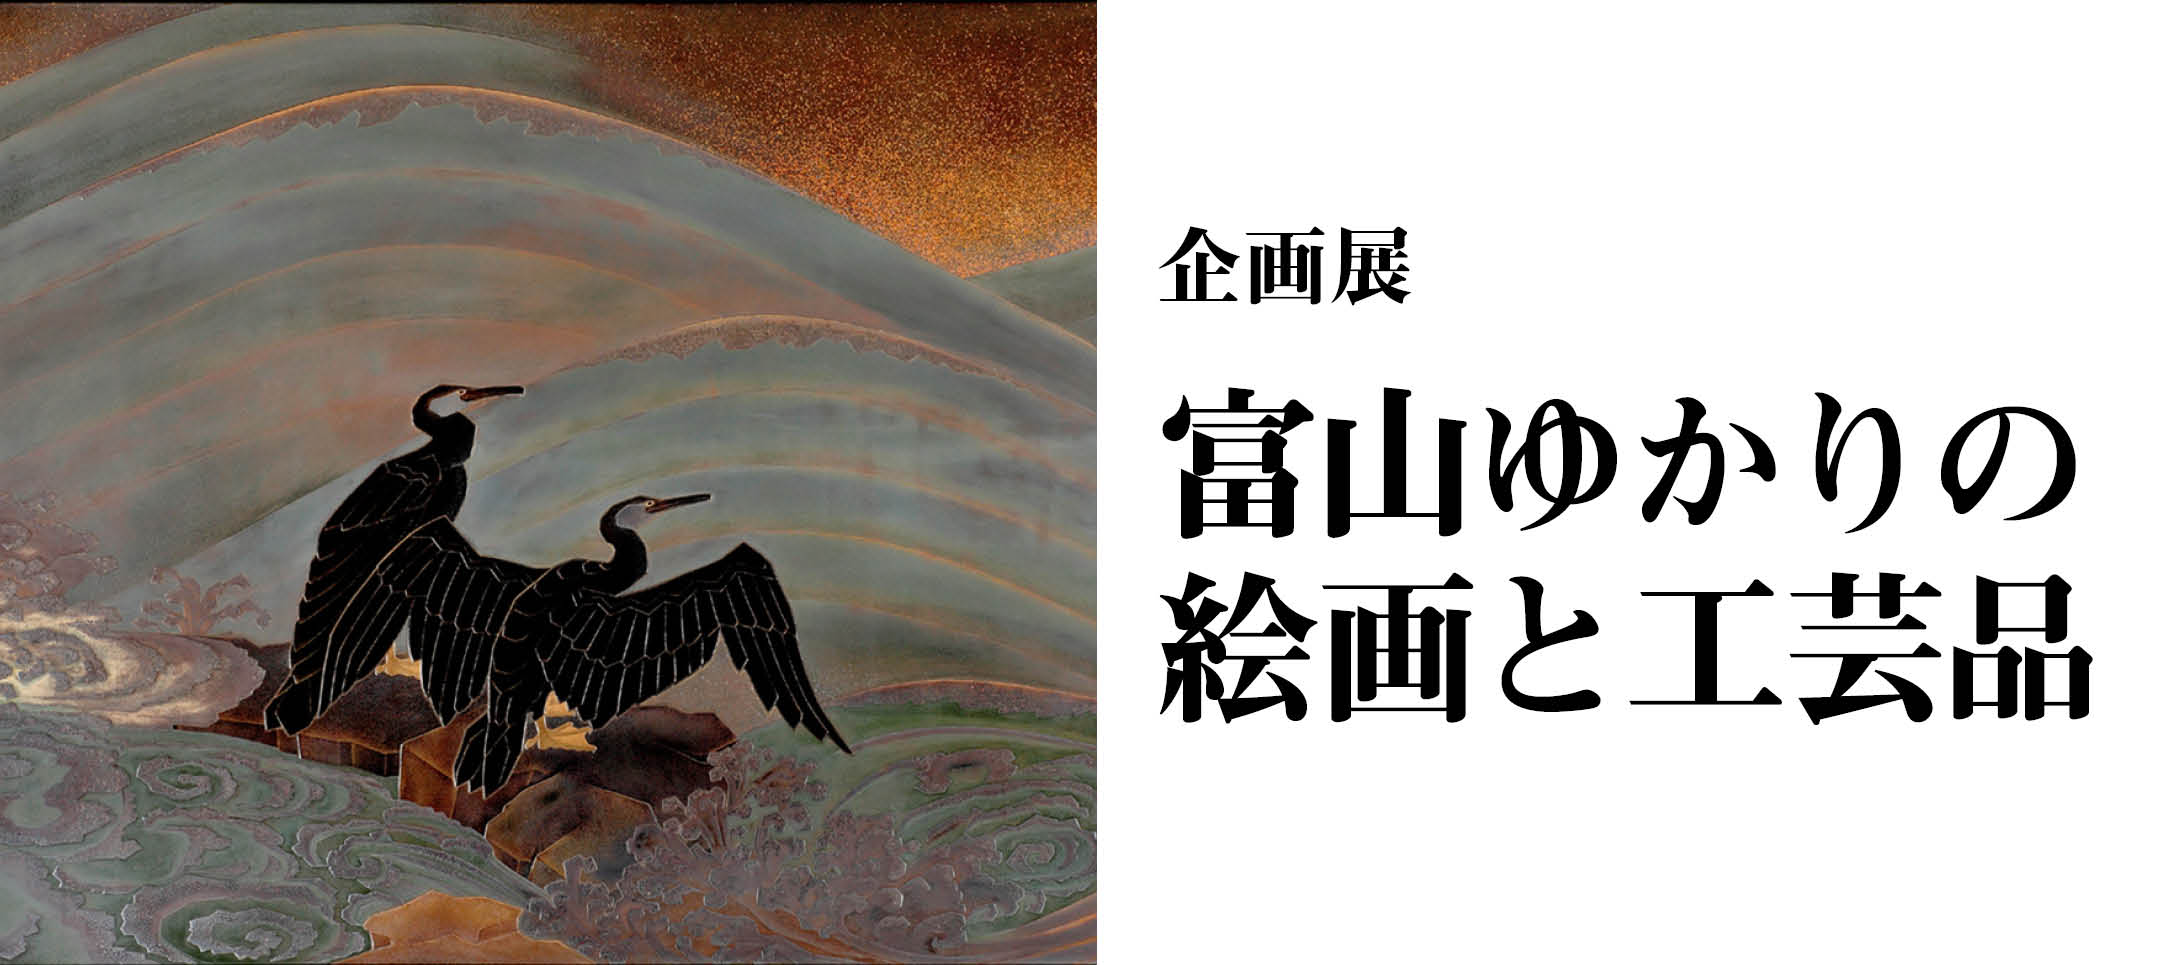 企画展「富山ゆかりの絵画と工芸品」